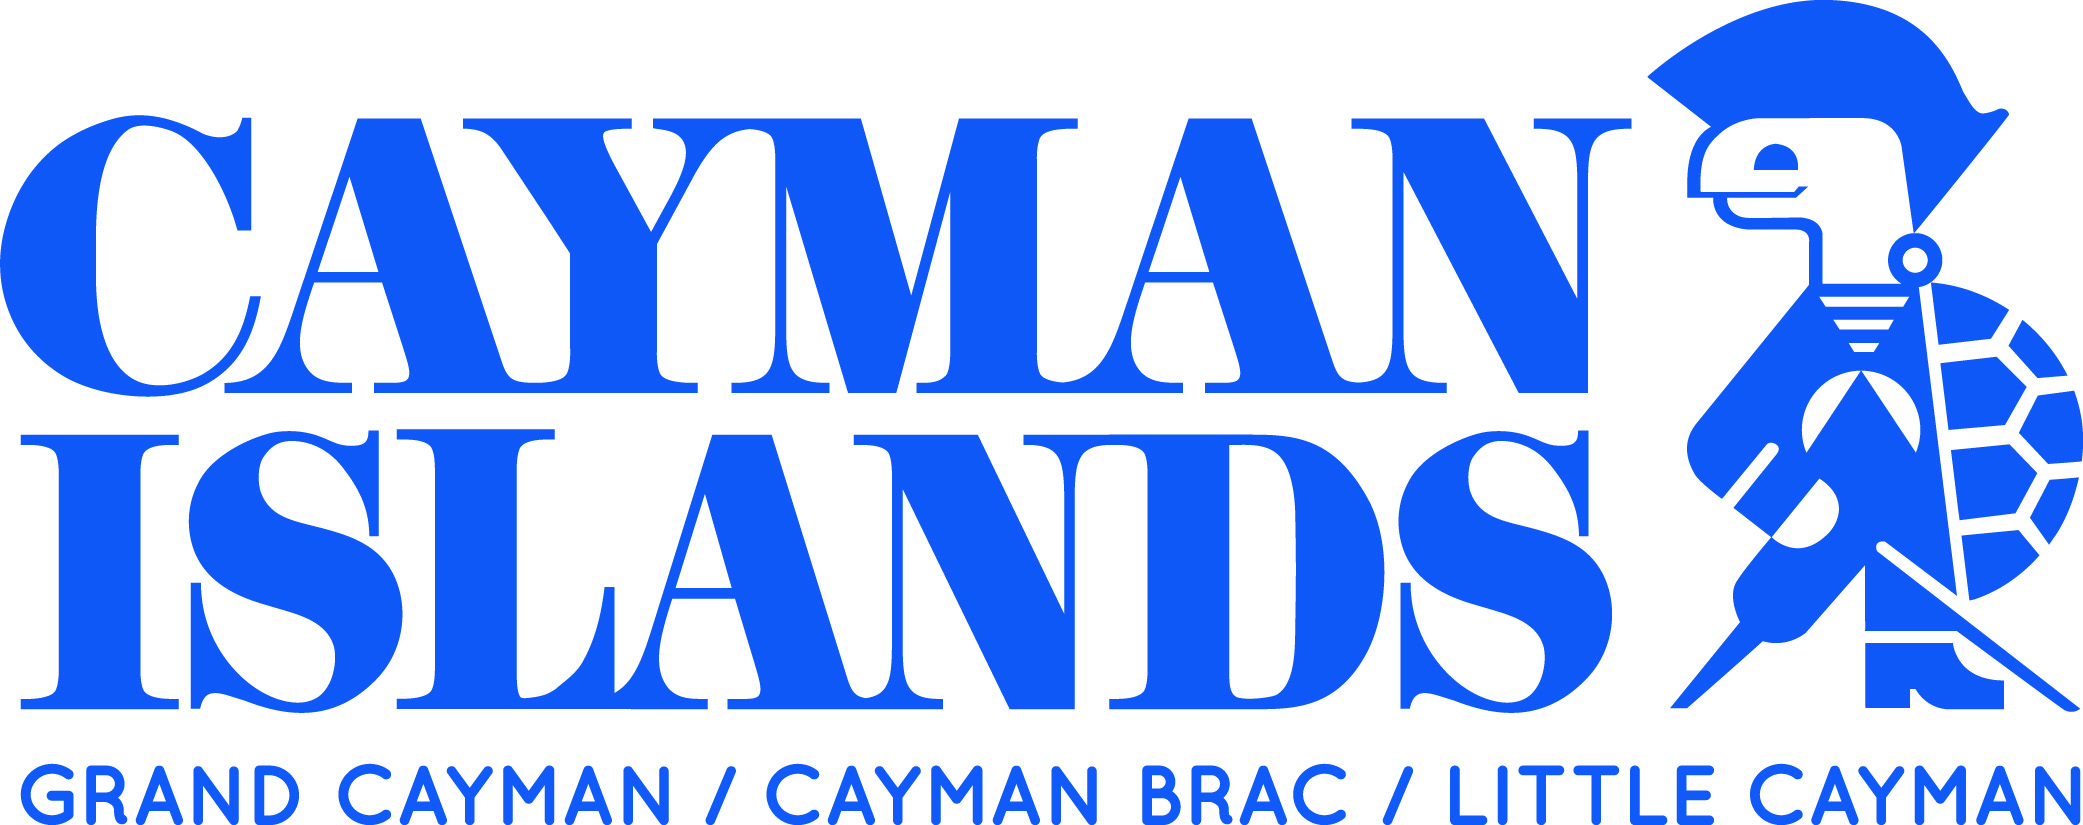 cayman islands tourism logo